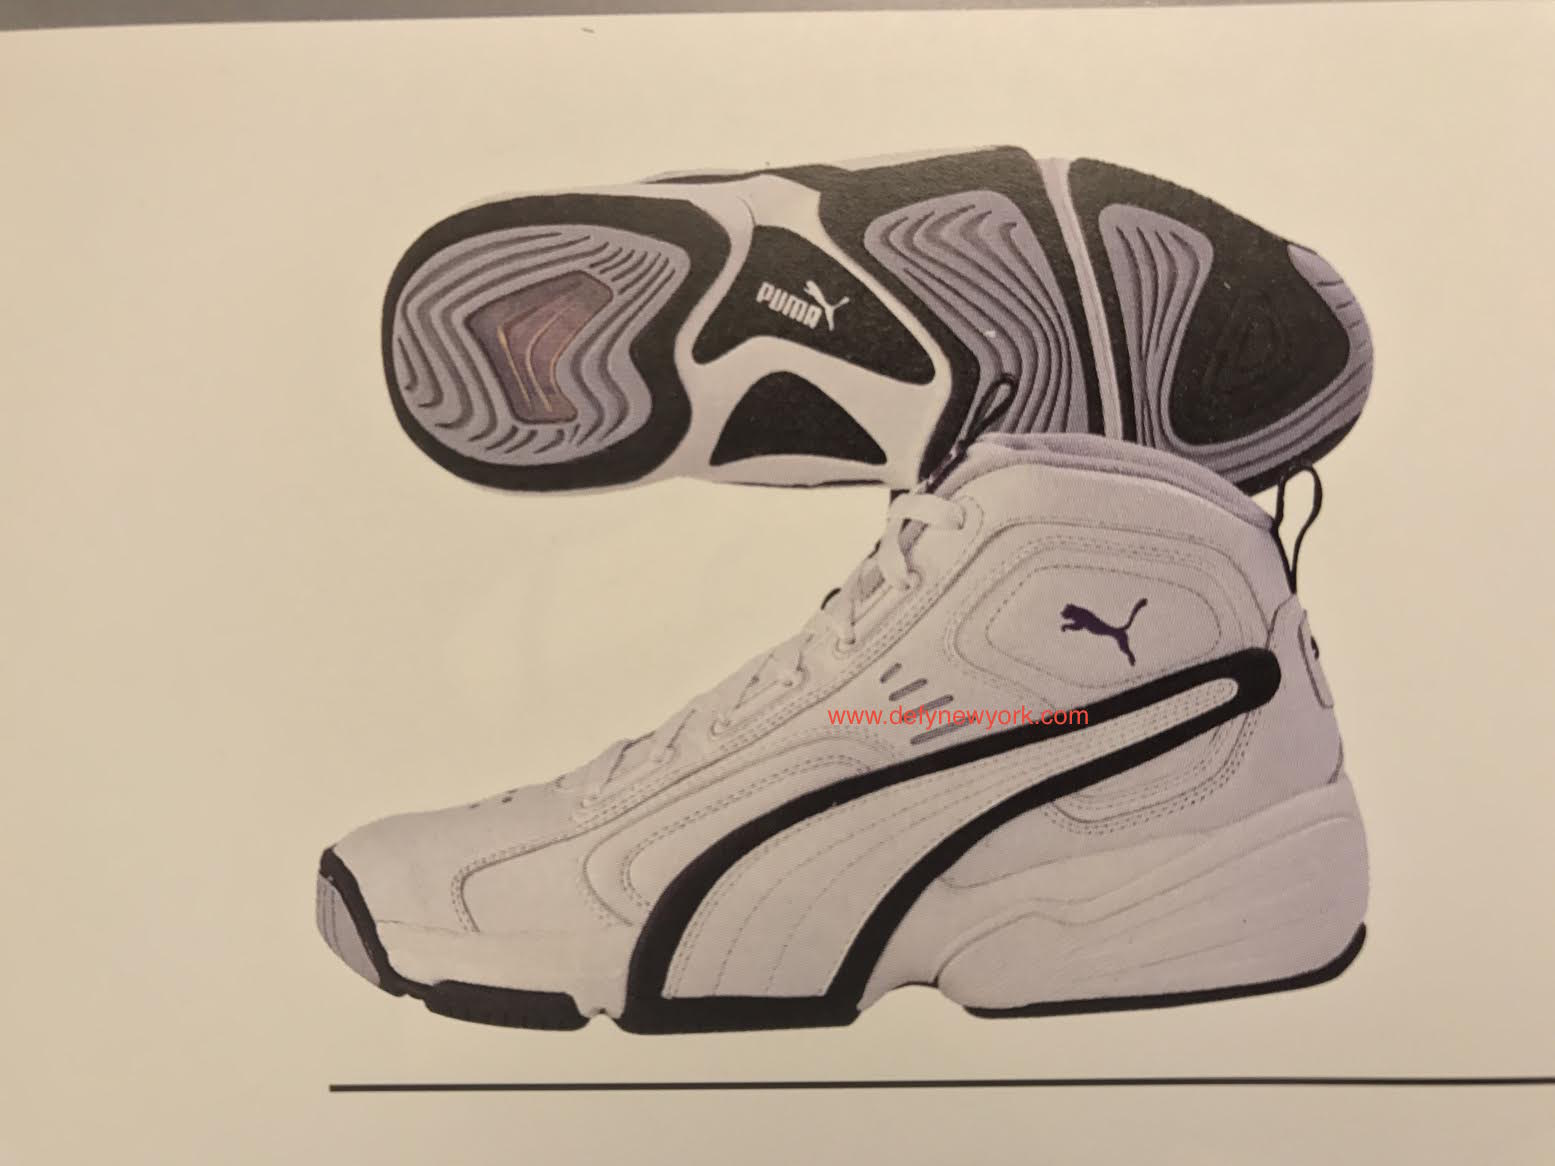 PUMA VI Mid & Low Basketball Shoe 2000 : DeFY. New York-Sneakers,Music,Fashion,Life.